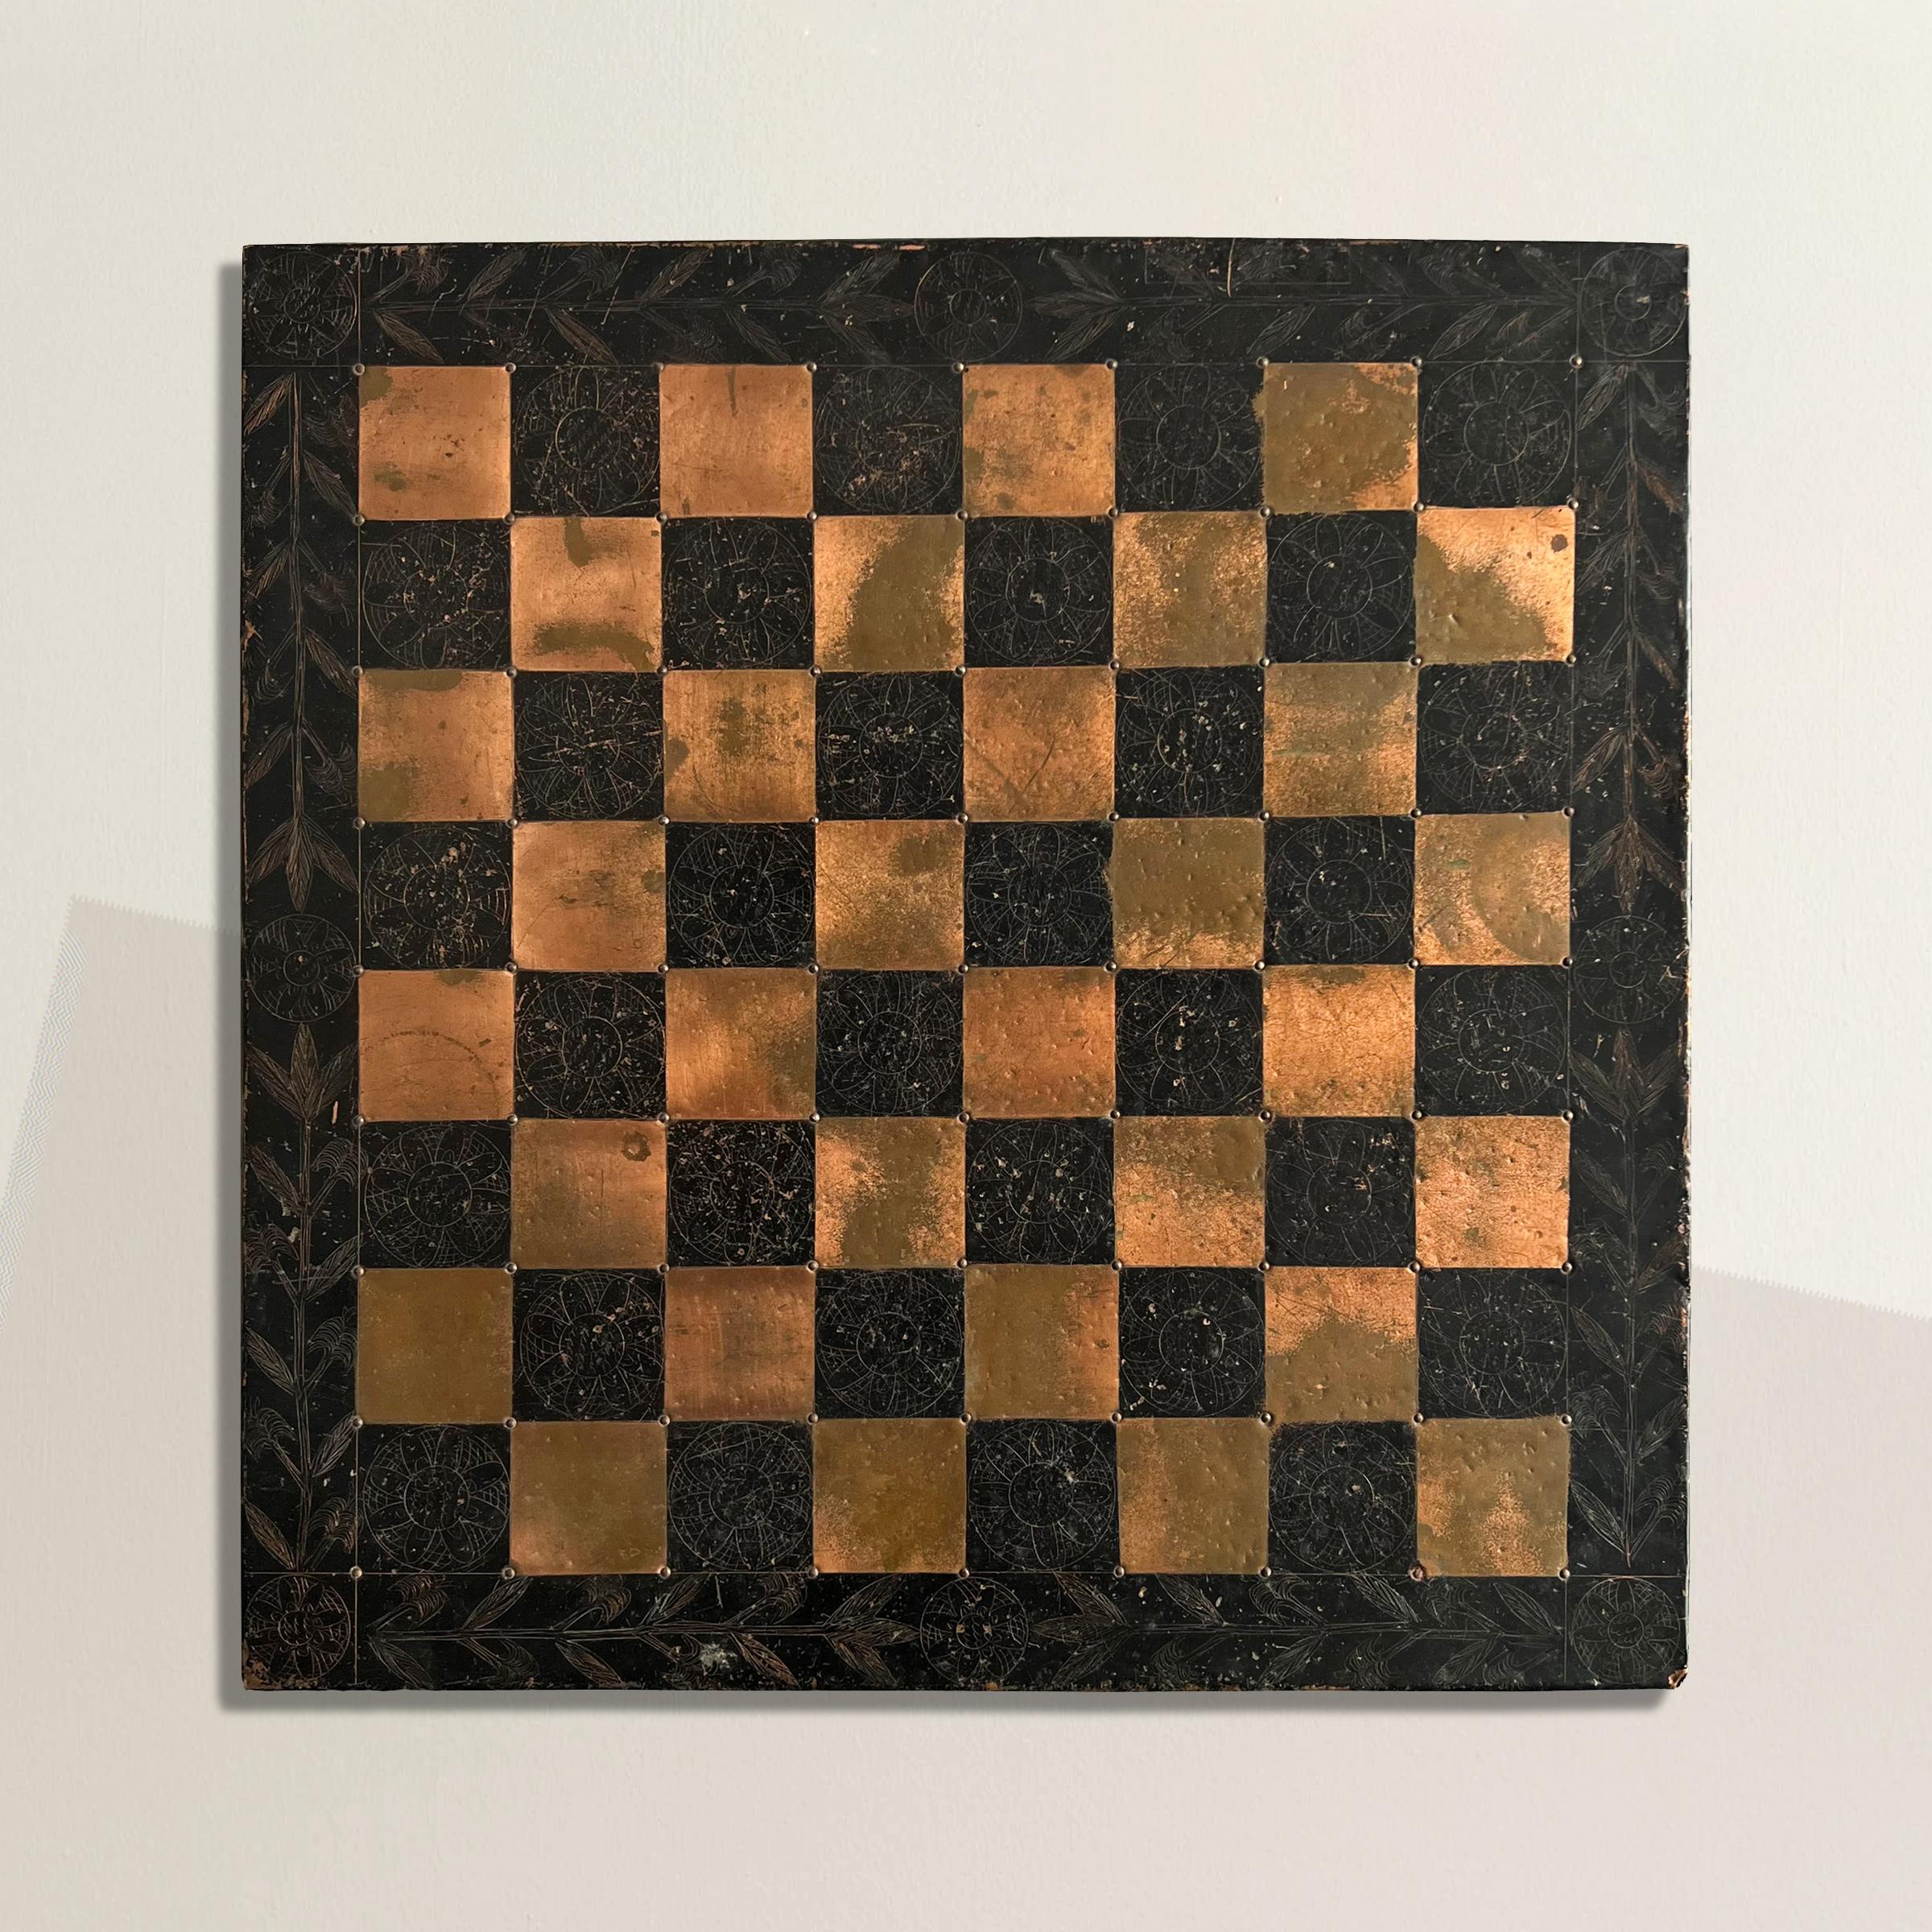 Dieses bezaubernde Schachbrett aus der Mitte des 20. Jahrhunderts aus amerikanischer Volkskunst ist ein wahres Zeugnis naiver und unkonventioneller Handwerkskunst und Kreativität. Das in sorgfältiger Handarbeit gefertigte Brett besteht aus